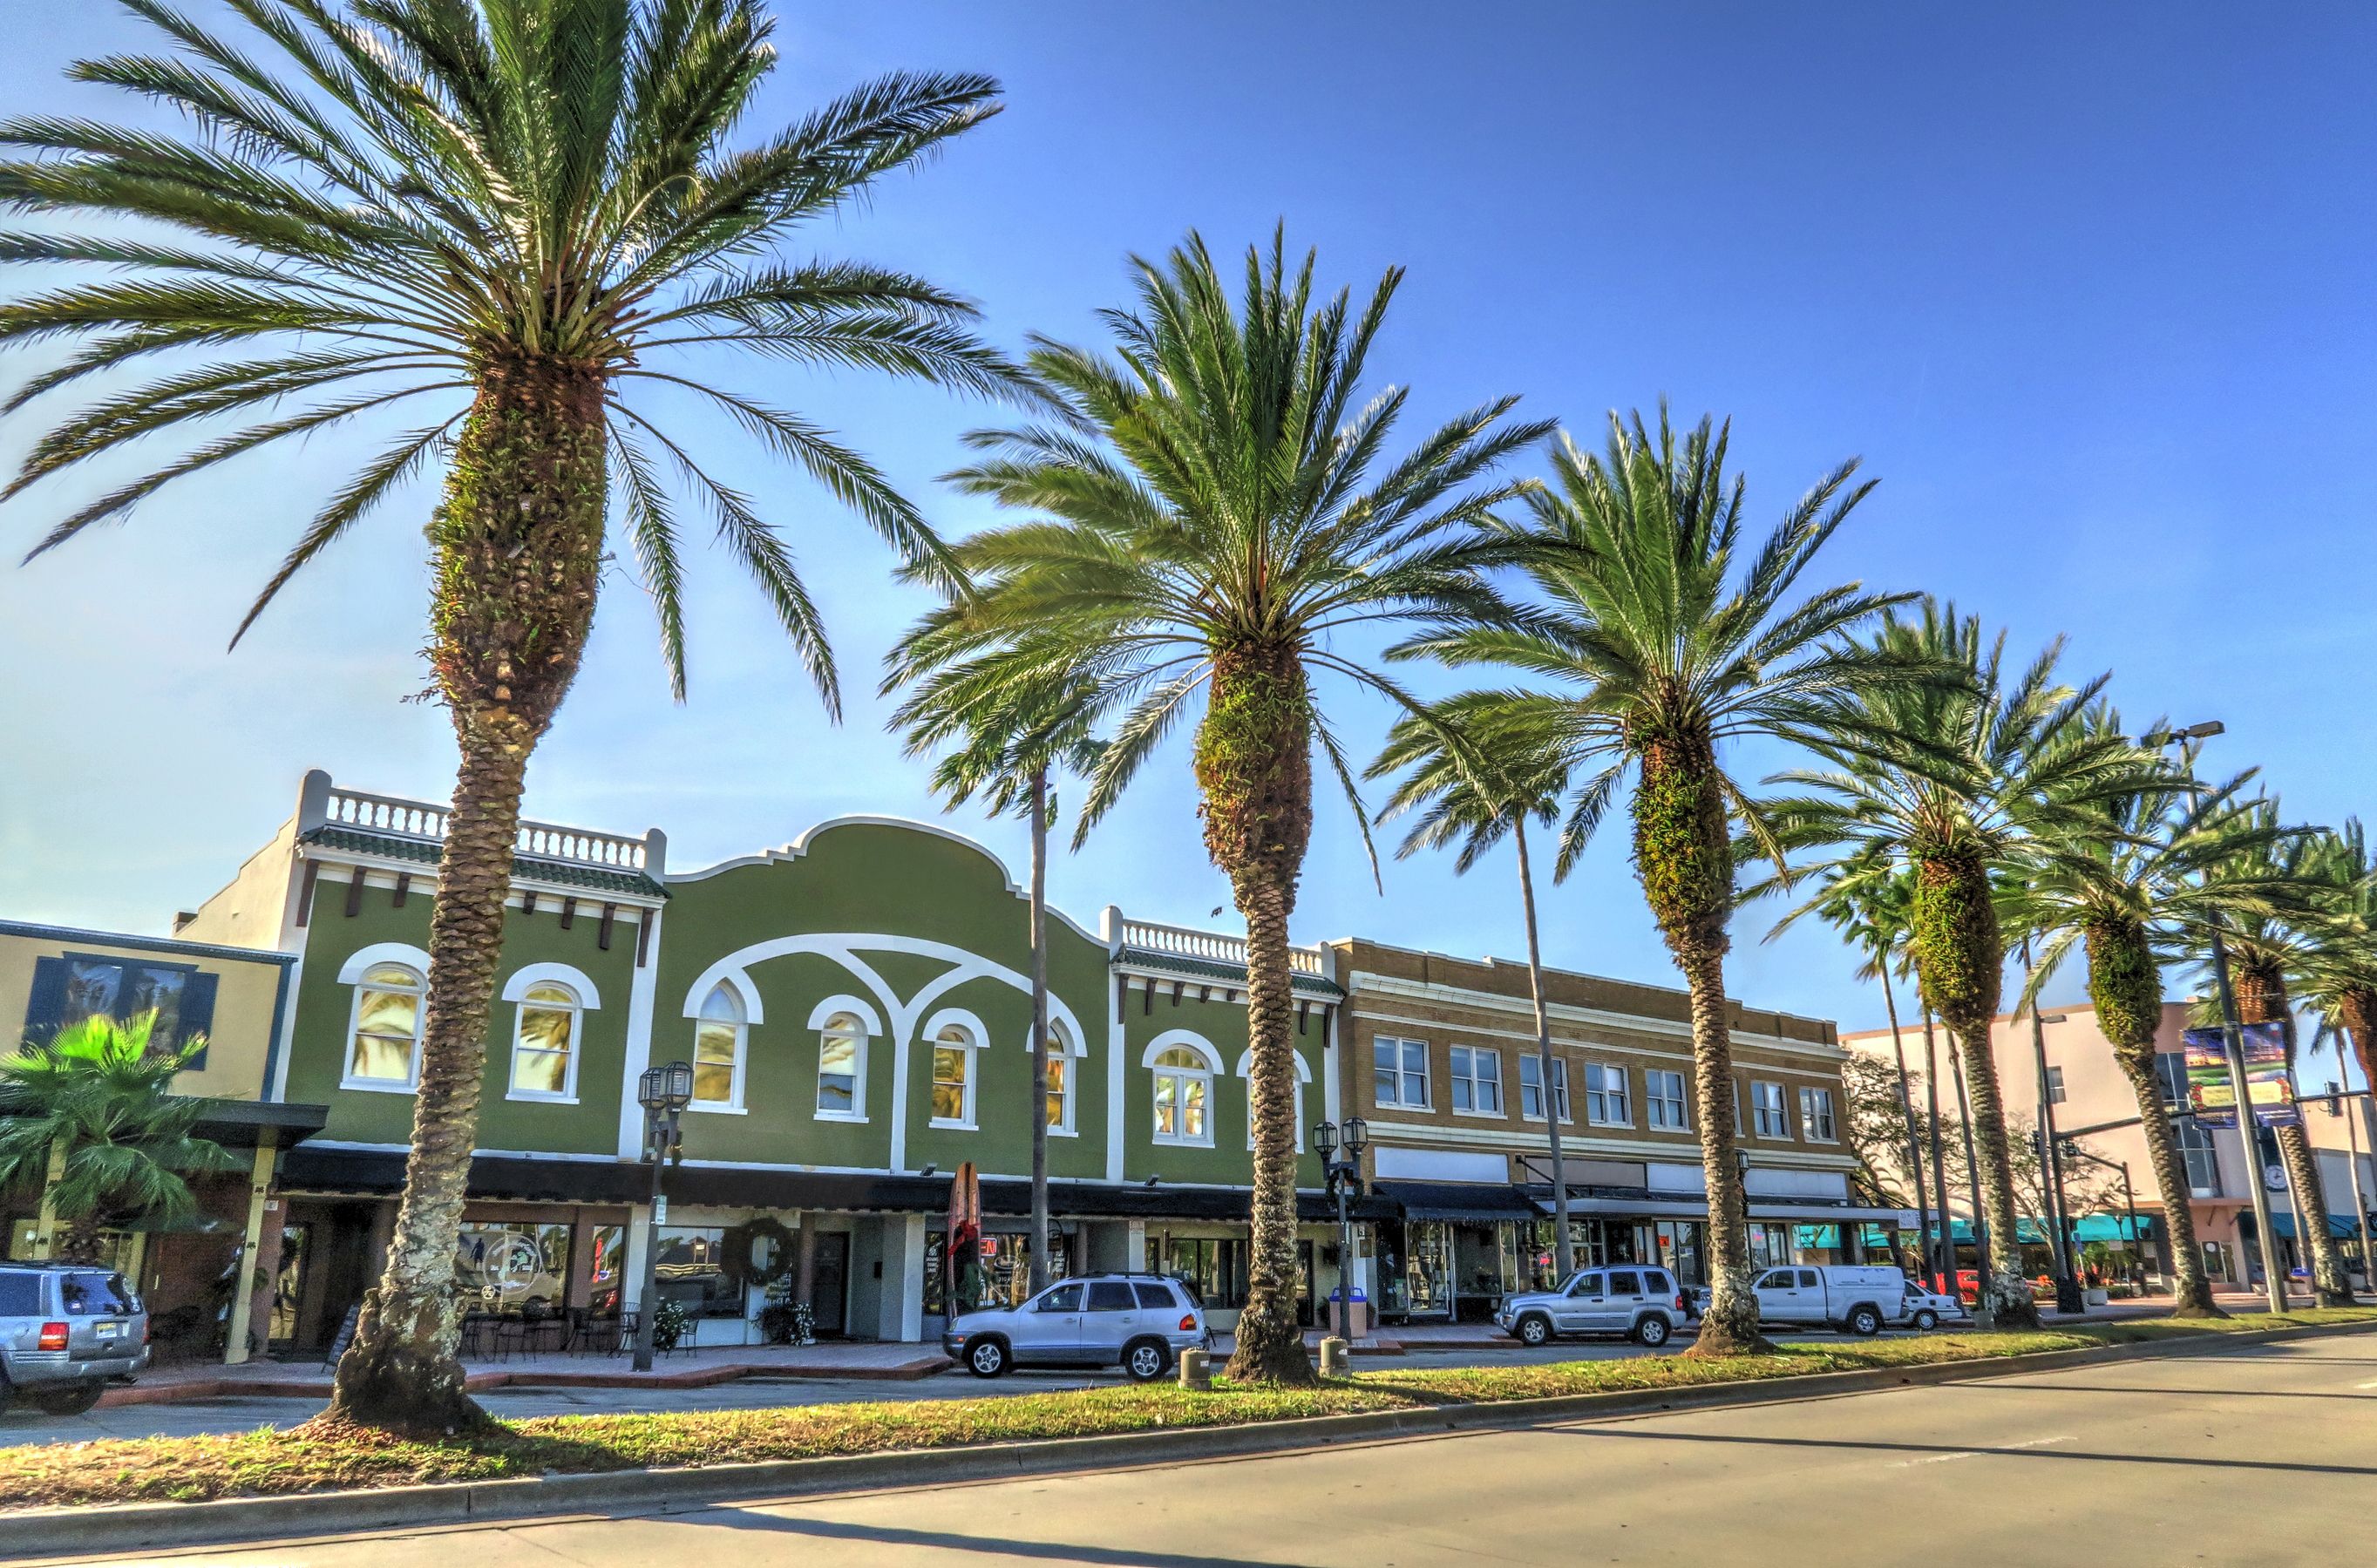 Main strip in downtown Daytona Beach